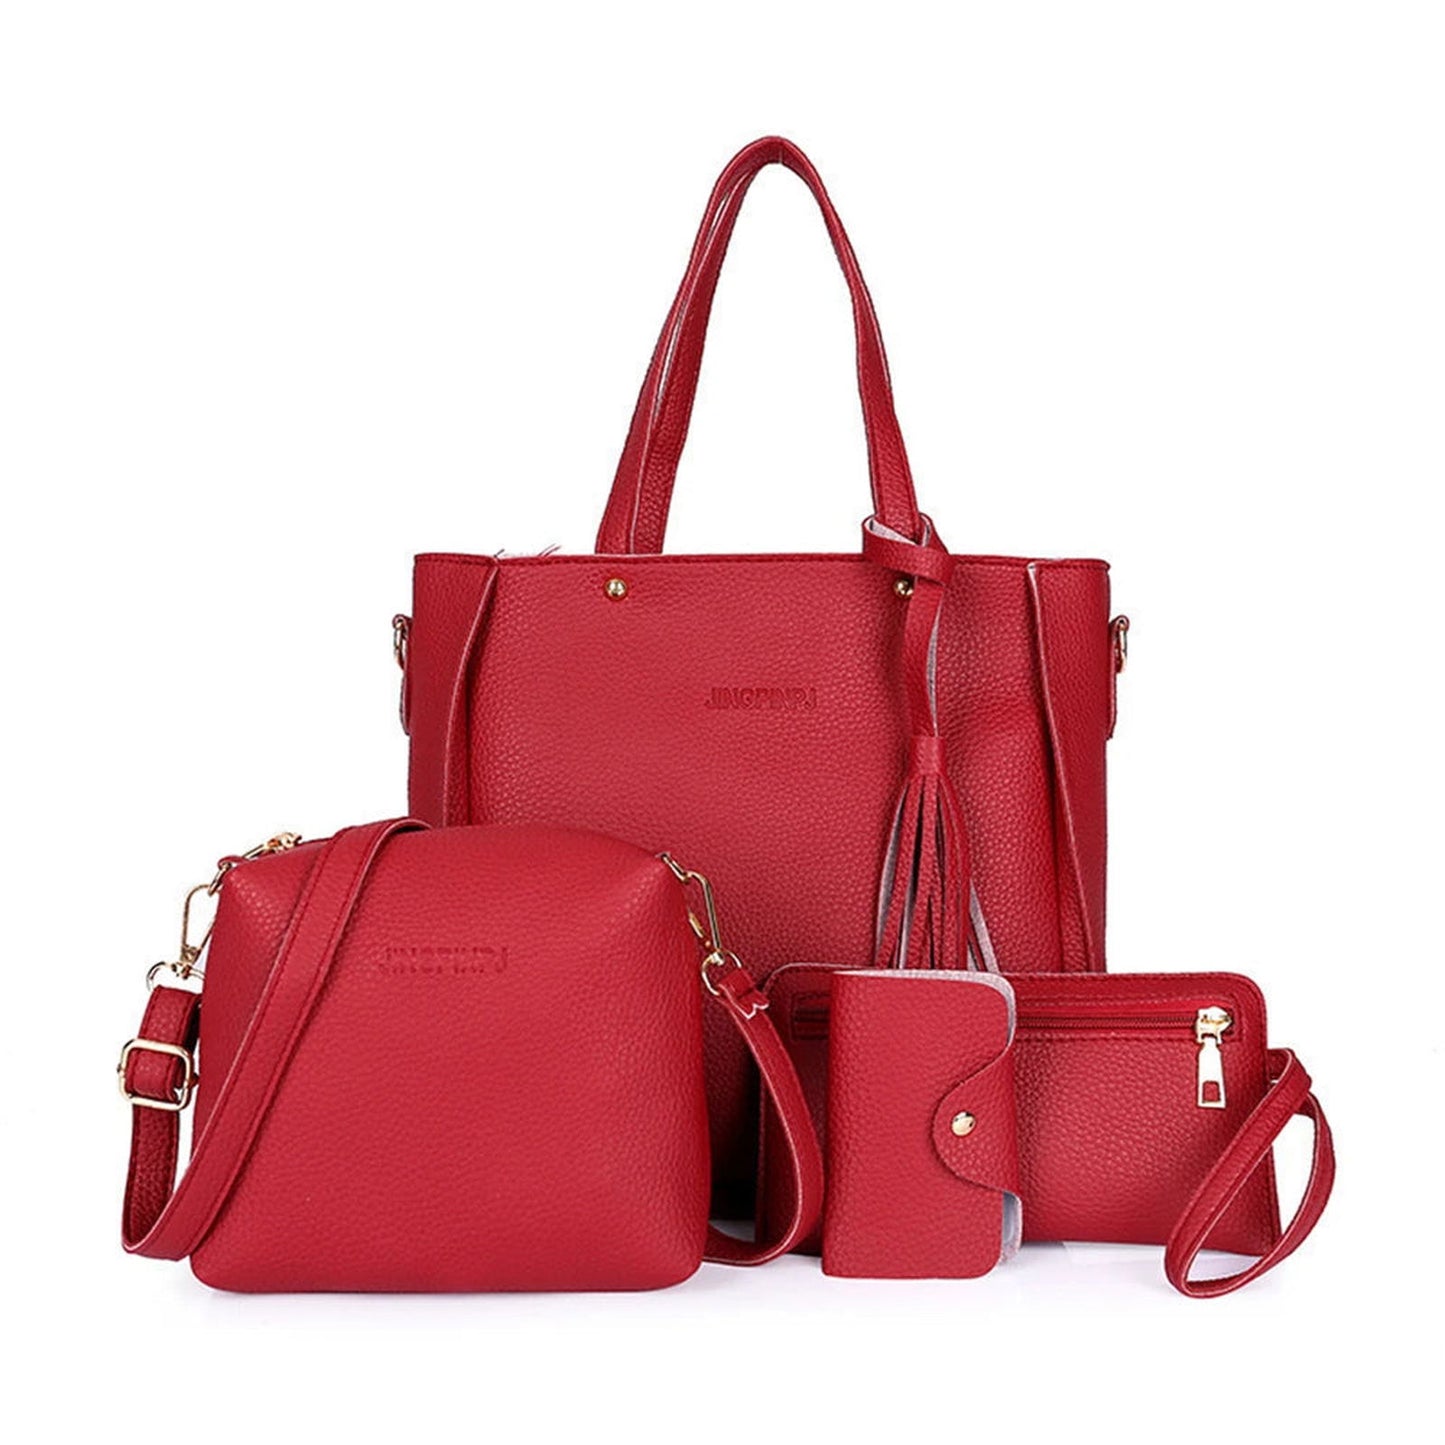 4pcs Set Women Pu Leather Handbag Fashionable Shoulder Purses Ladies Purse Messenger Satchel Wallet Bags New - ARCHE